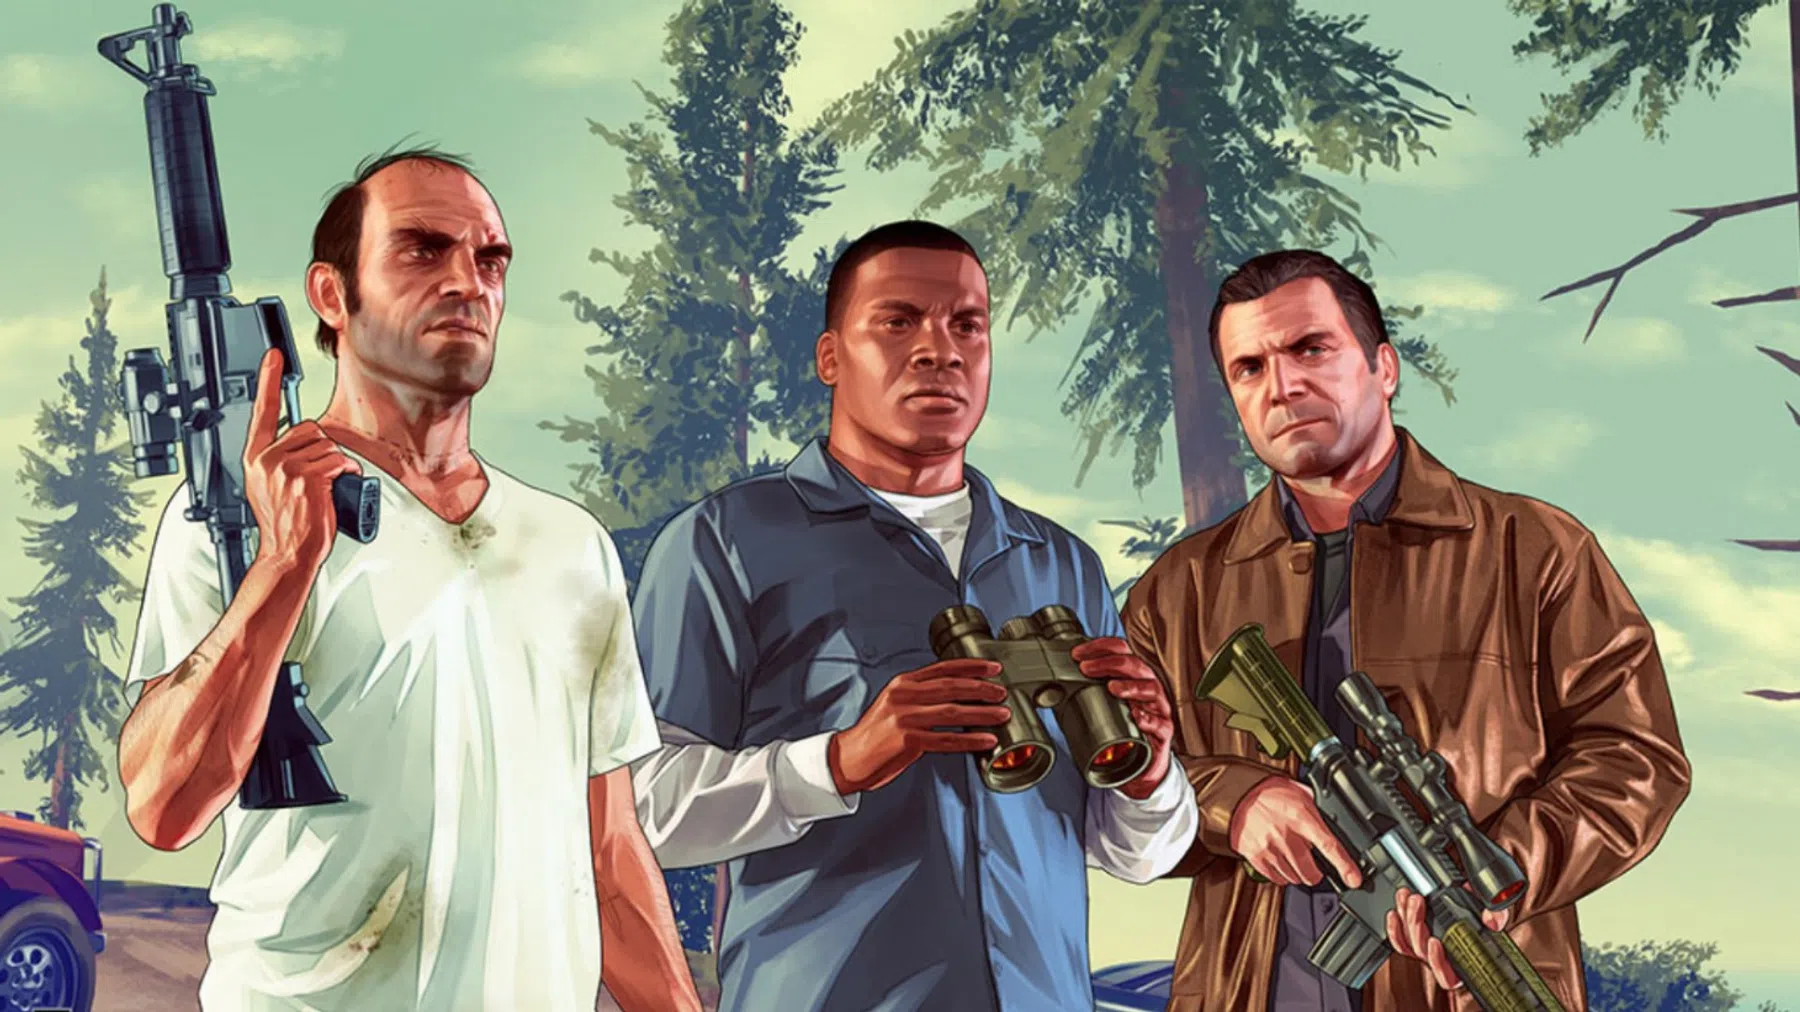 Eerste GTA 6-trailer komt eraan: dit weten we al over Grand Theft Auto 6